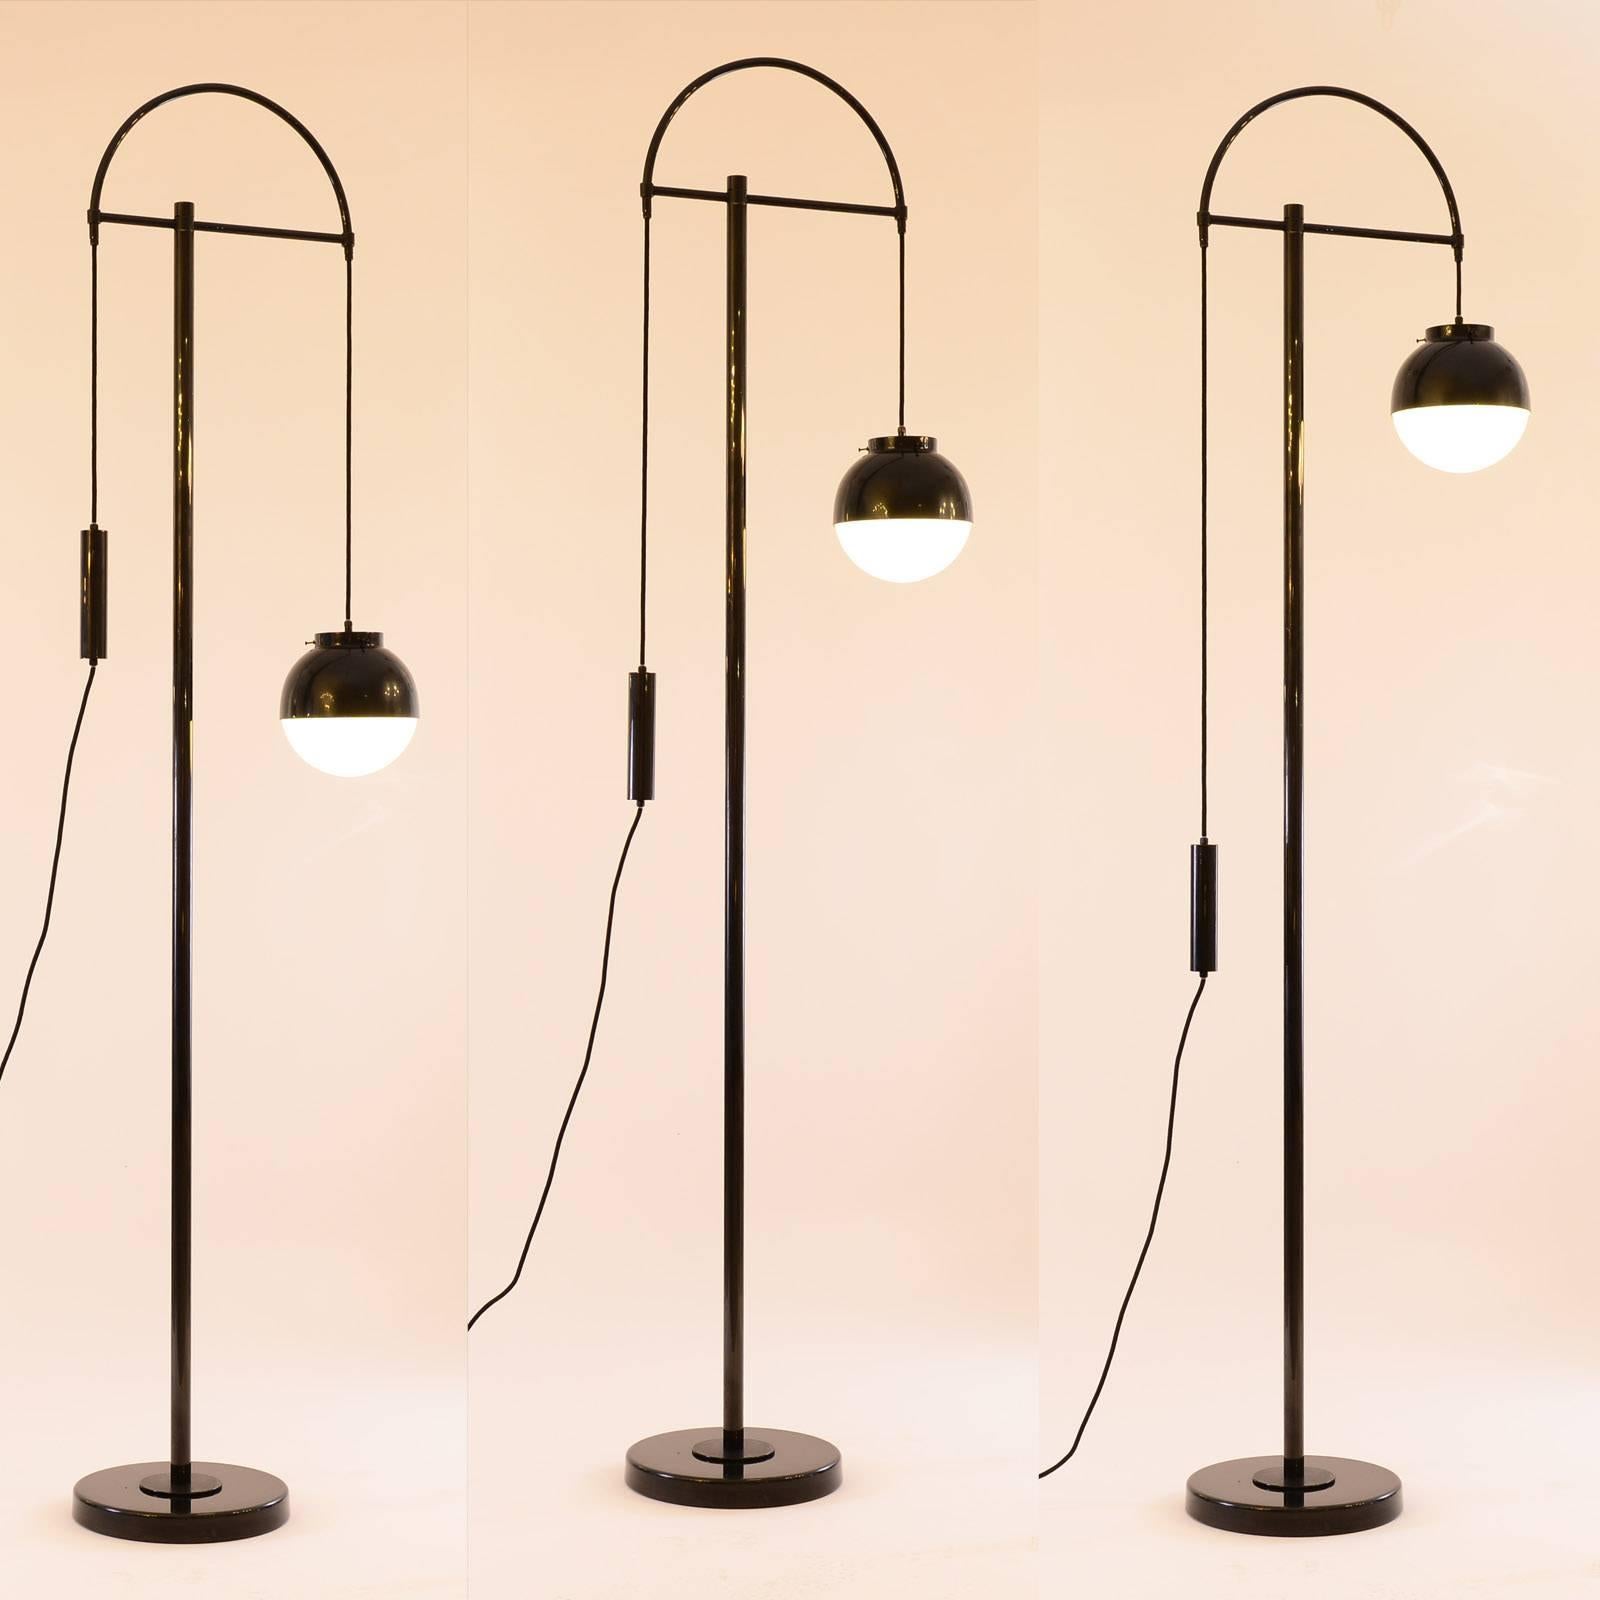 Der Lampenschirm kann in der Höhe verstellt werden
unterschiedliche Ausführungen verfügbar.